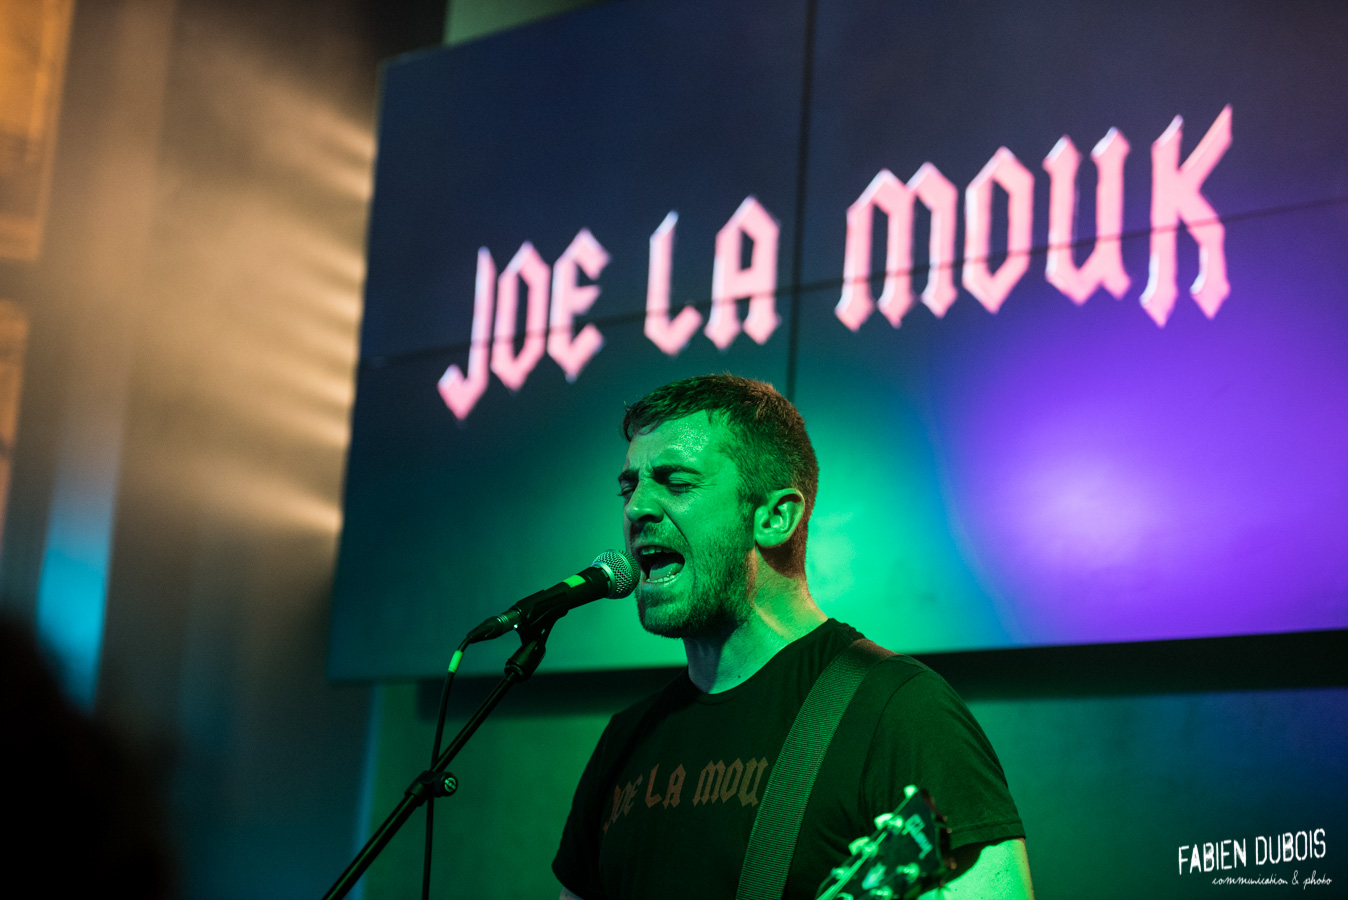 Photo Joe La Mouk Hard Rock Café Lyon 2018